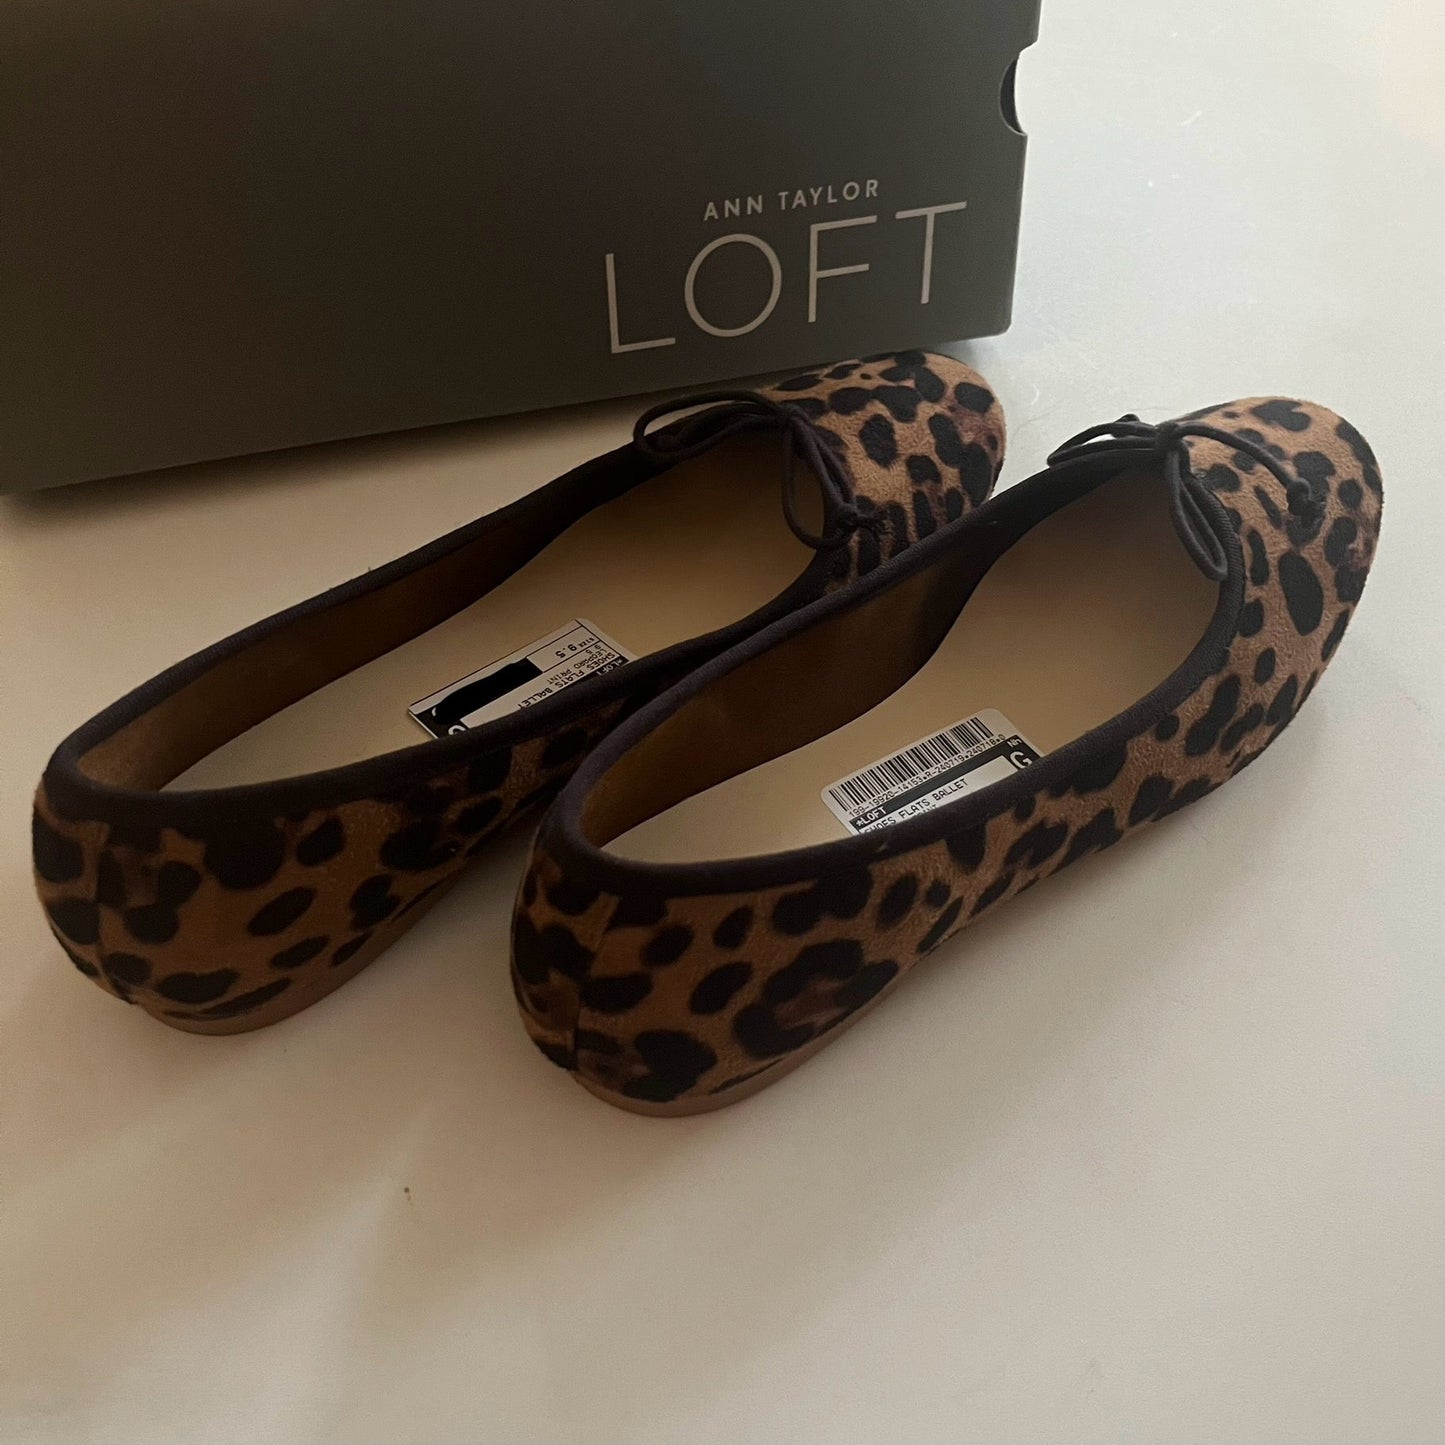 Leopard Print Shoes Flats Ballet Loft, Size 9.5